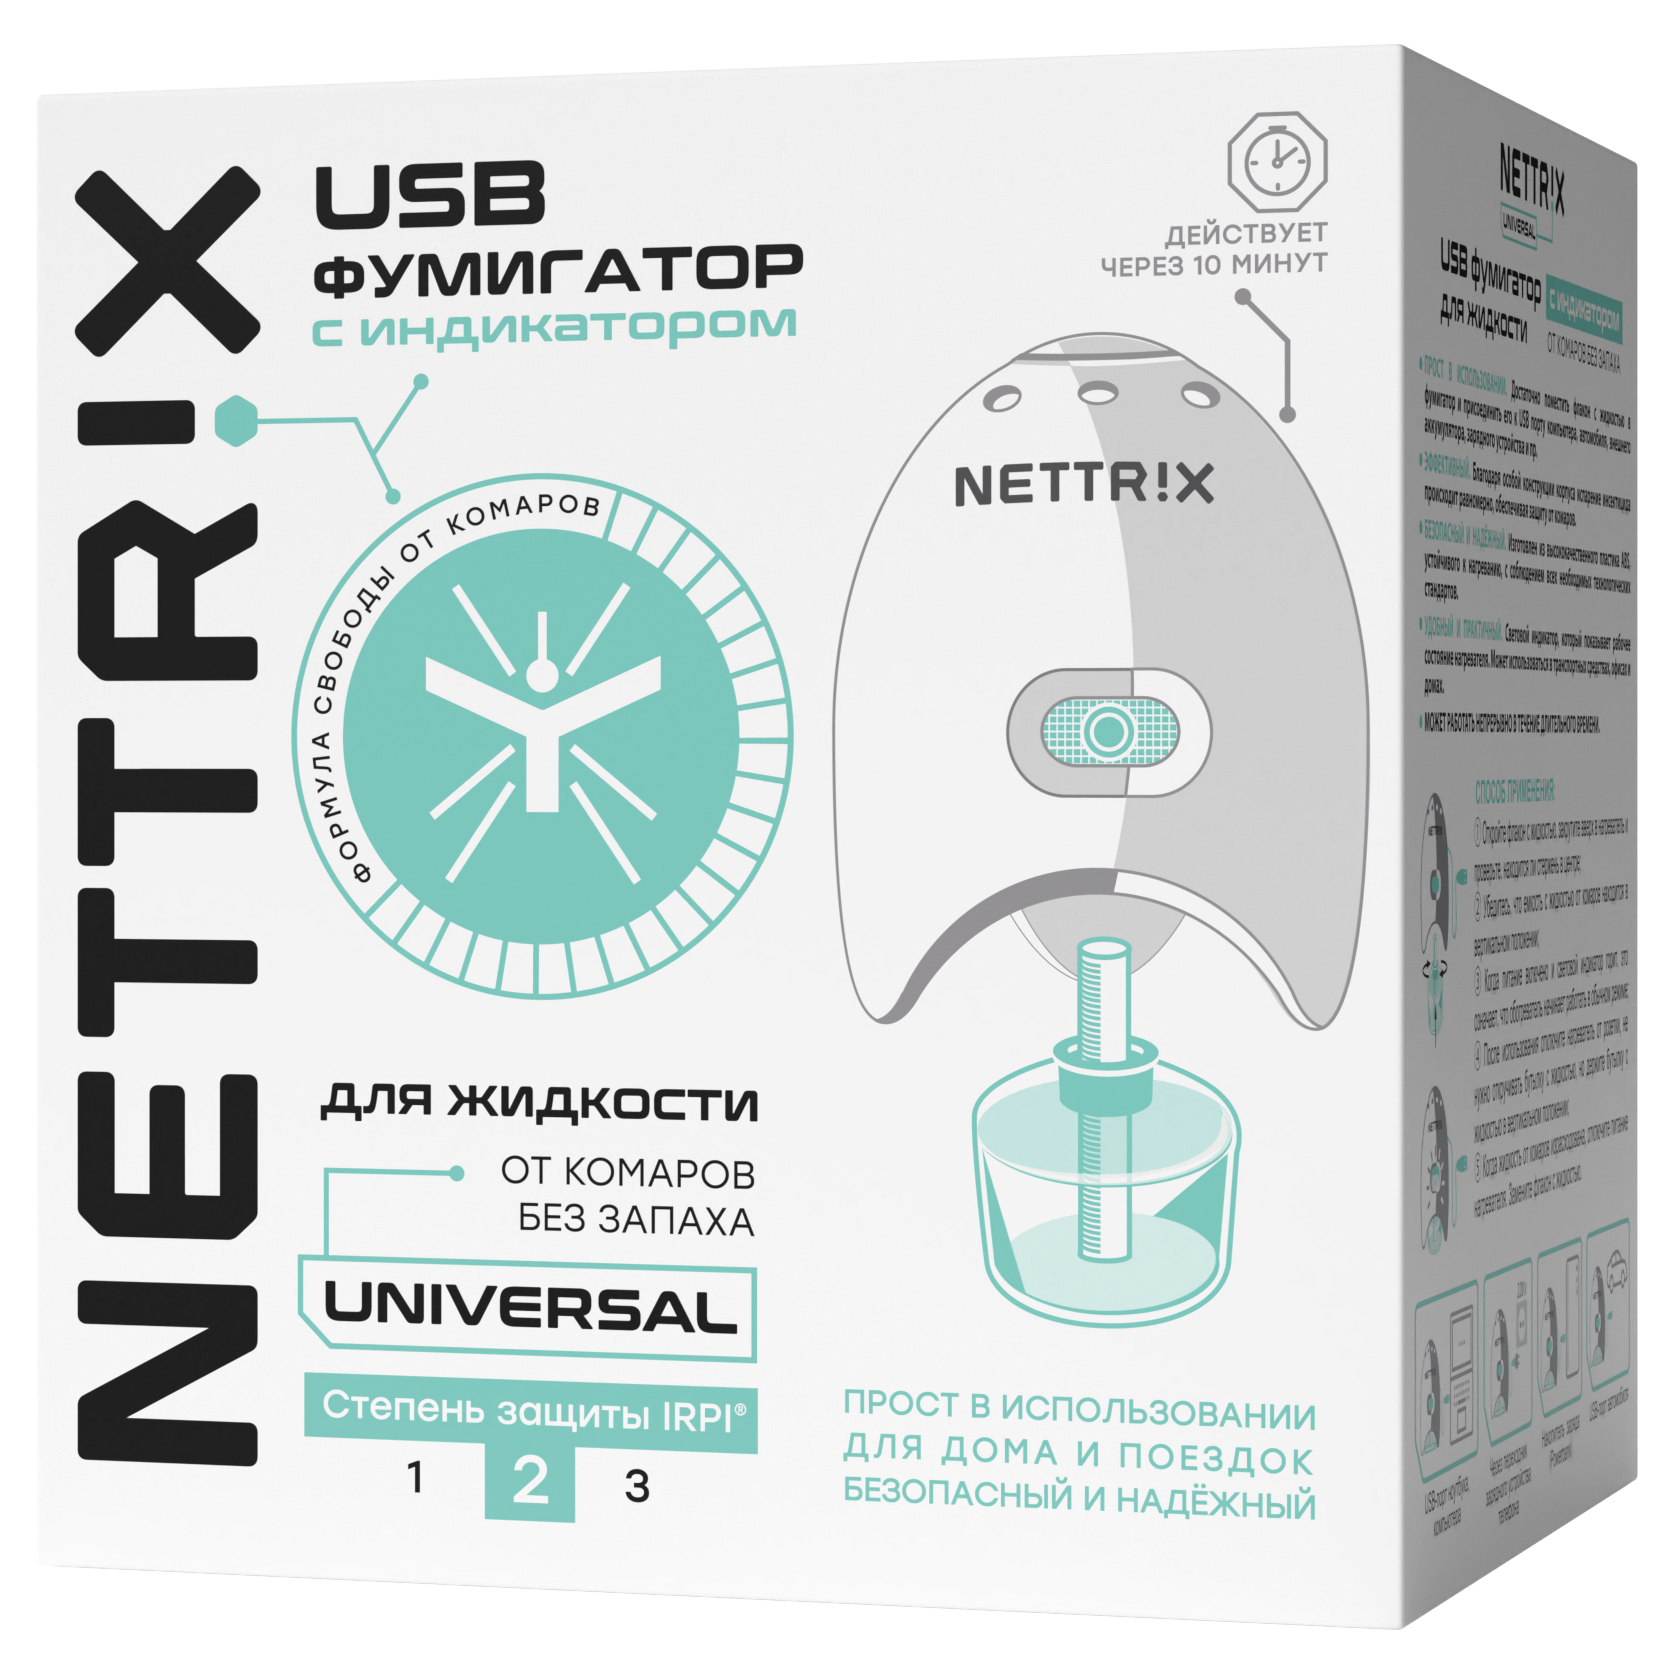 Фумигатор USB Nettrix Universal для жидкостей nettrix пластины от комаров длительного действия universal 10